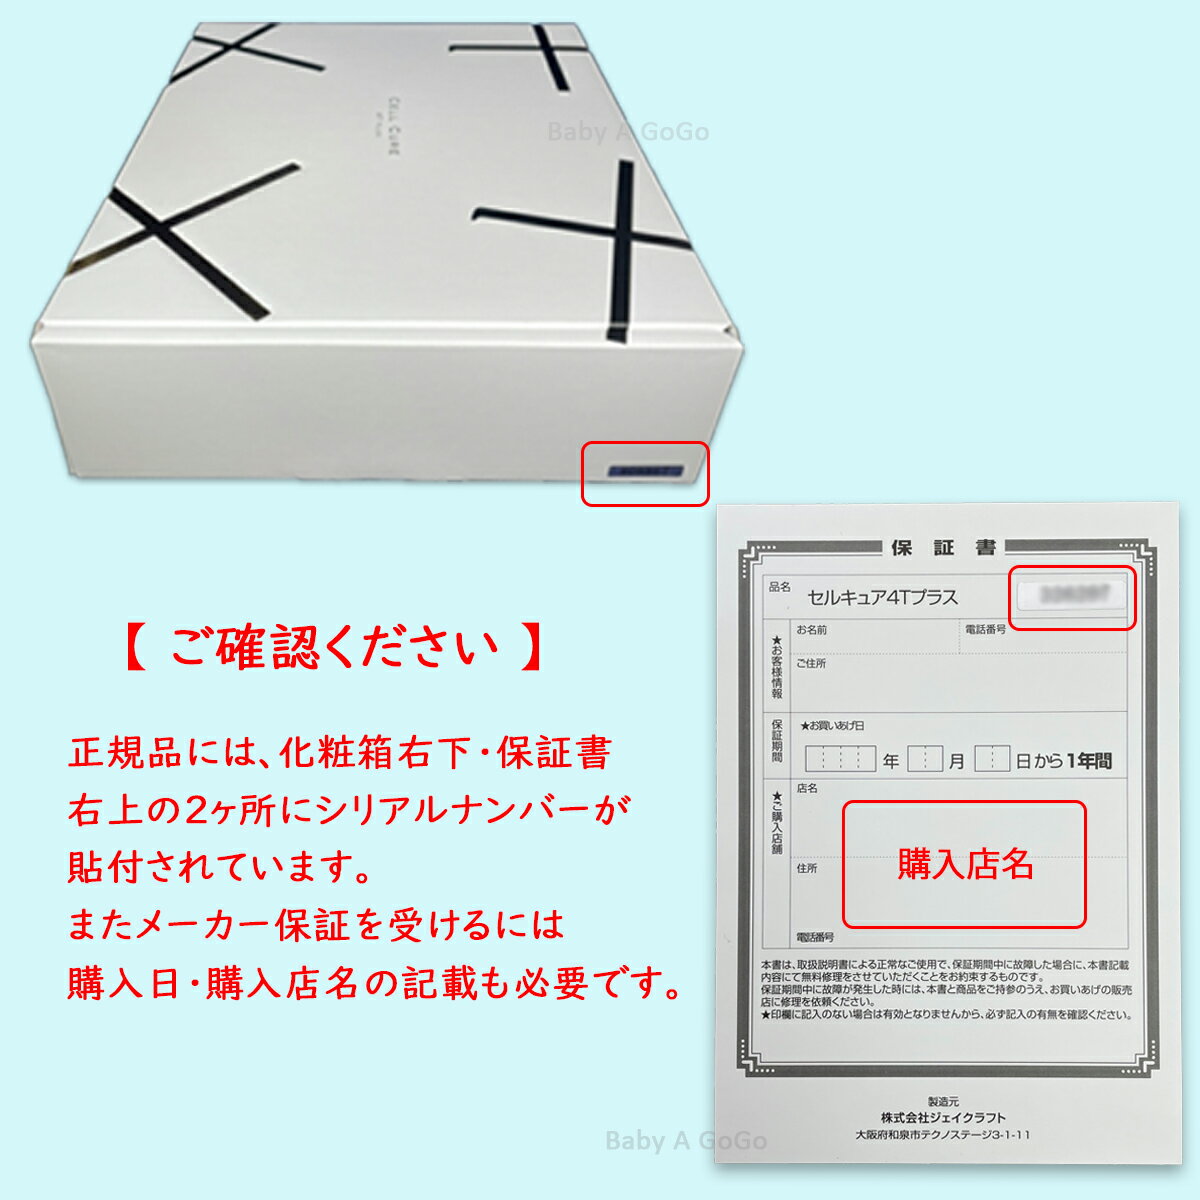 ベレガ セルキュア4Tプラス Cell Cure 4T PLUS 表情筋EMS エレクトロクレンジング マイクロカレント ディーポレーション (6044393)